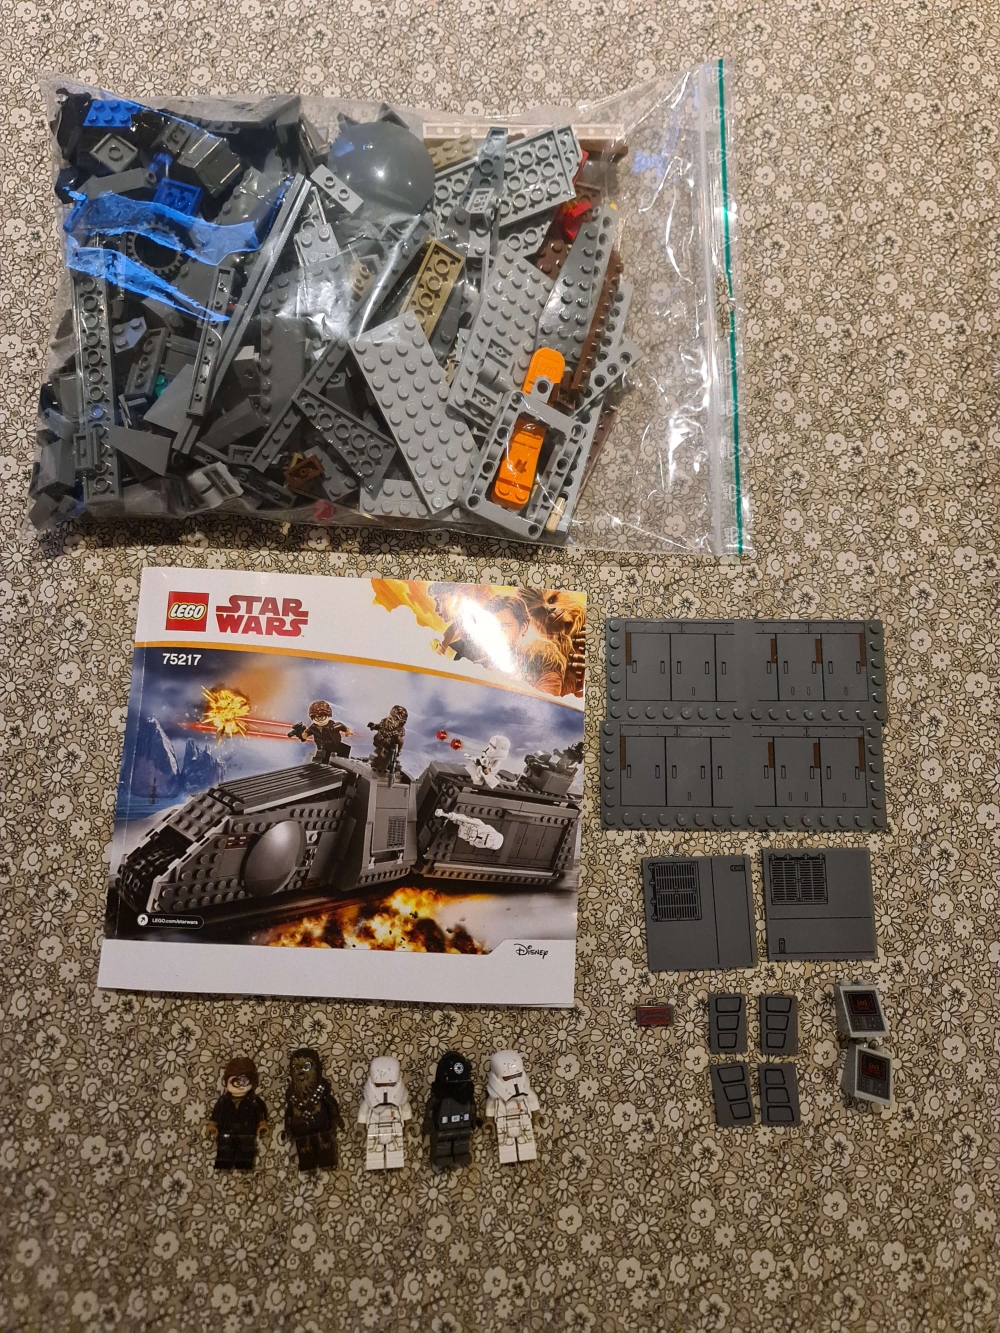 Sett 75217 fra Lego Star Wars : Star Wars Solo serien
Som nytt.
Komplett med manual.